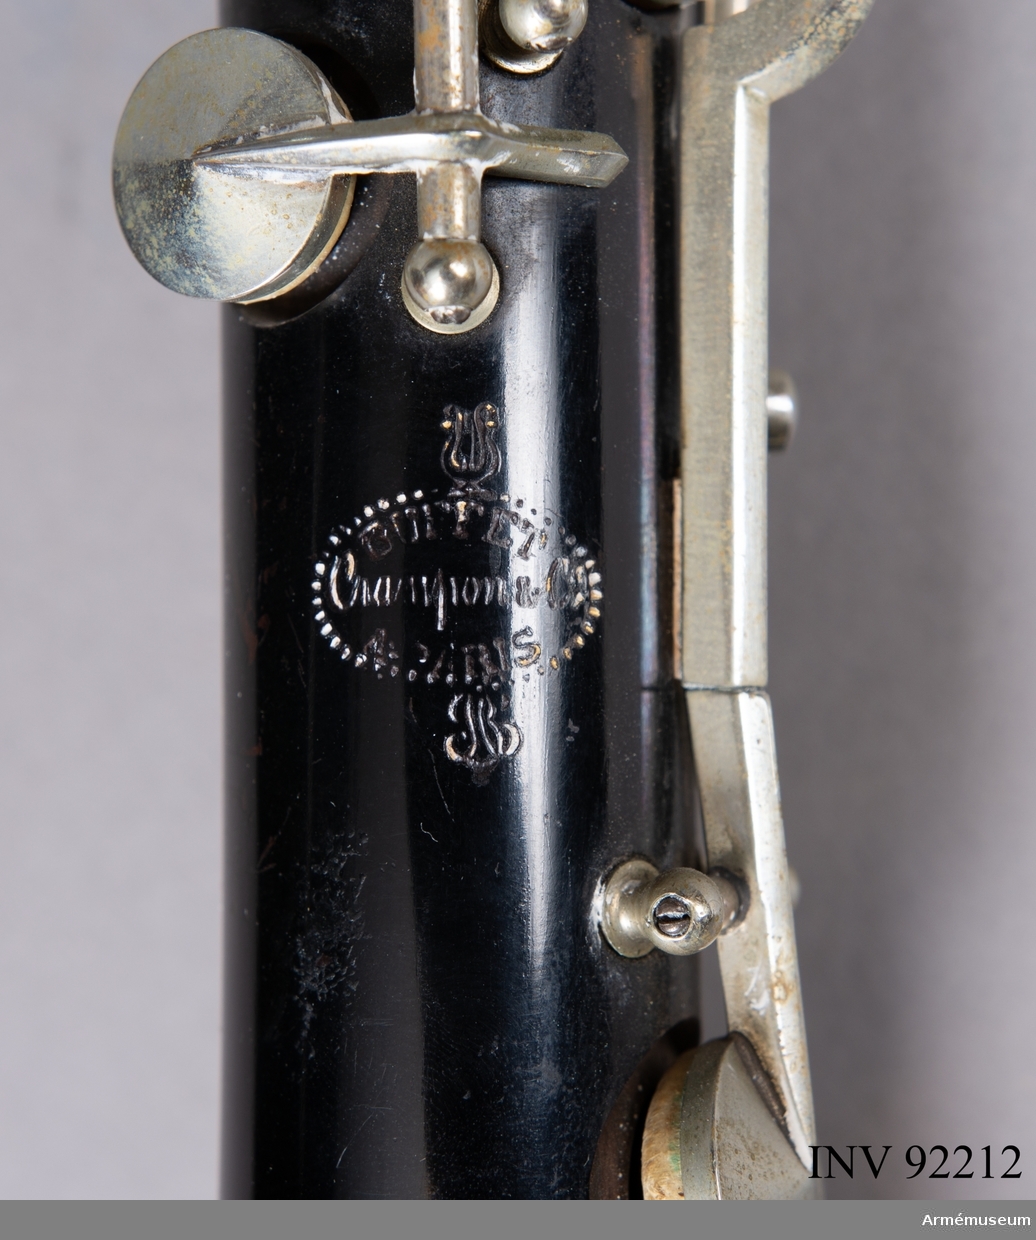 Ess-klarinett med tillhörande fodral.

Ess-klarinetten är stämd en kvart över B-klarinetten. Den är av mindre format och har utformats för att ge en mer gäll ton. Därför används de i större orkestrar för sin speciella effekt, liksom i militärorkestrar.